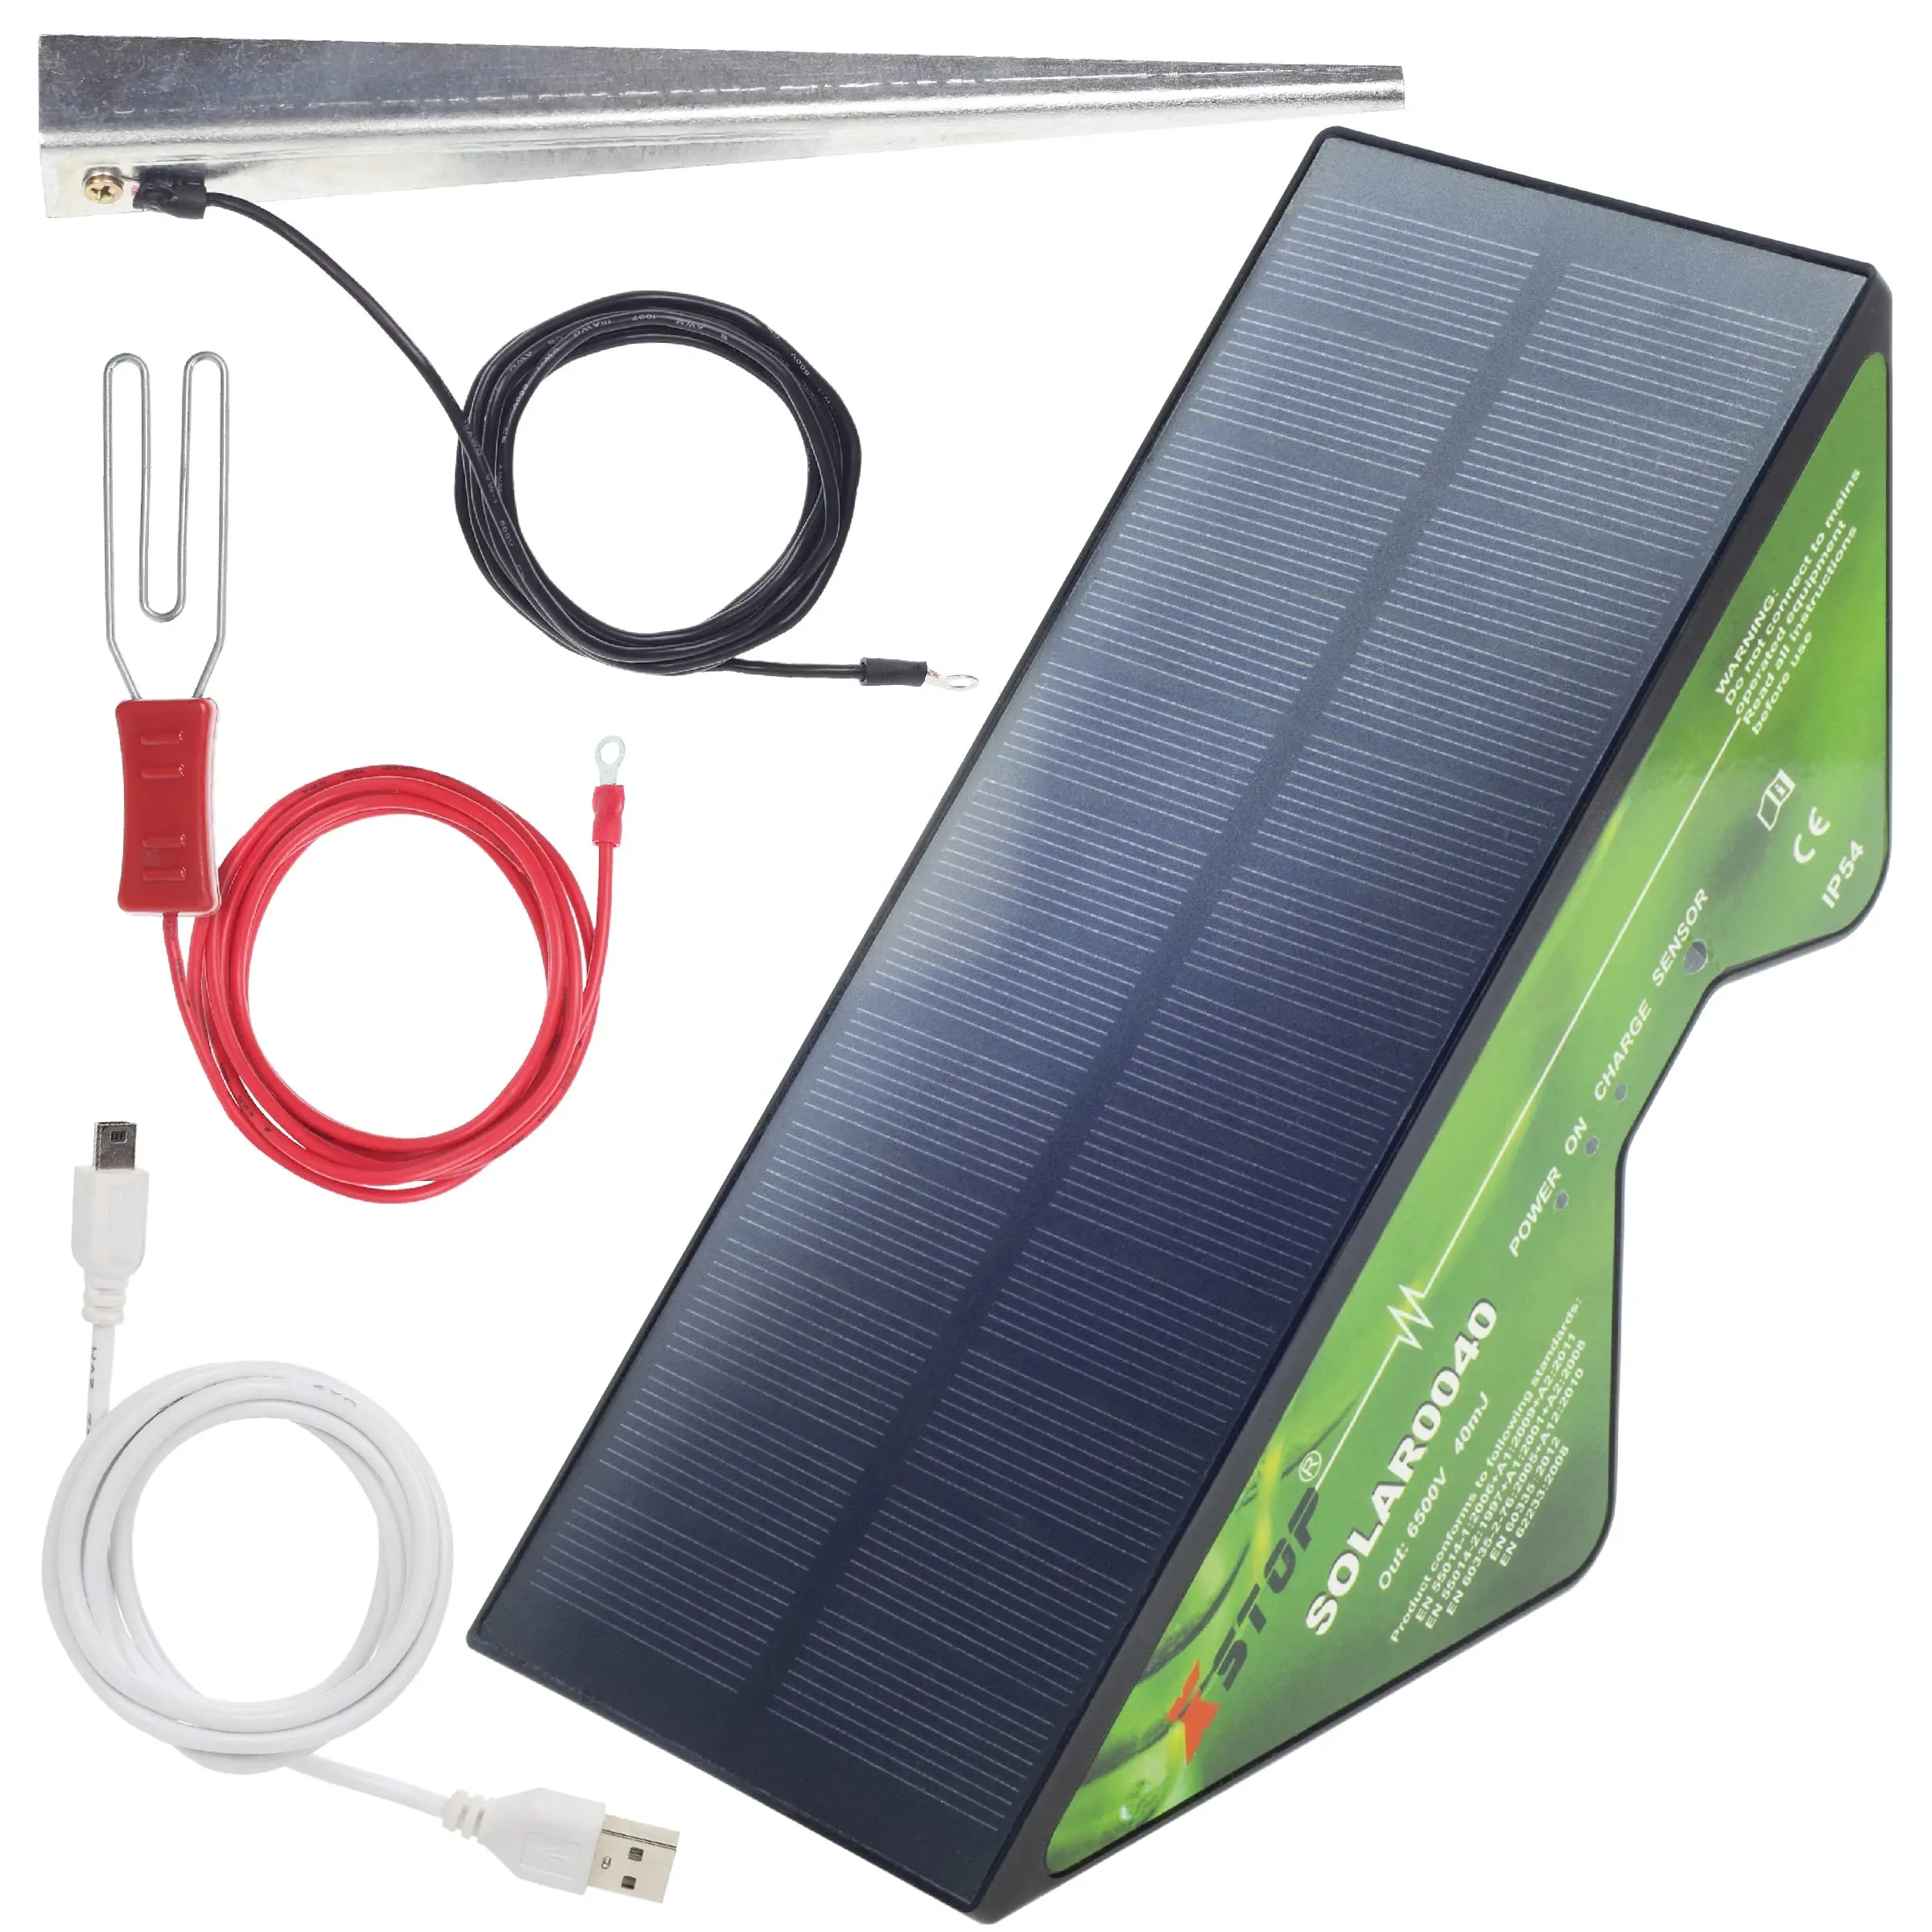 सौर ऊर्जा से संचालित इलेक्ट्रिक बाड़ X-Stop2 किमी रेंज फुल किट में पृथ्वी हिस्सेदारी और सभी लीड प्लस यूएसबी चार्ज केबल शामिल है।